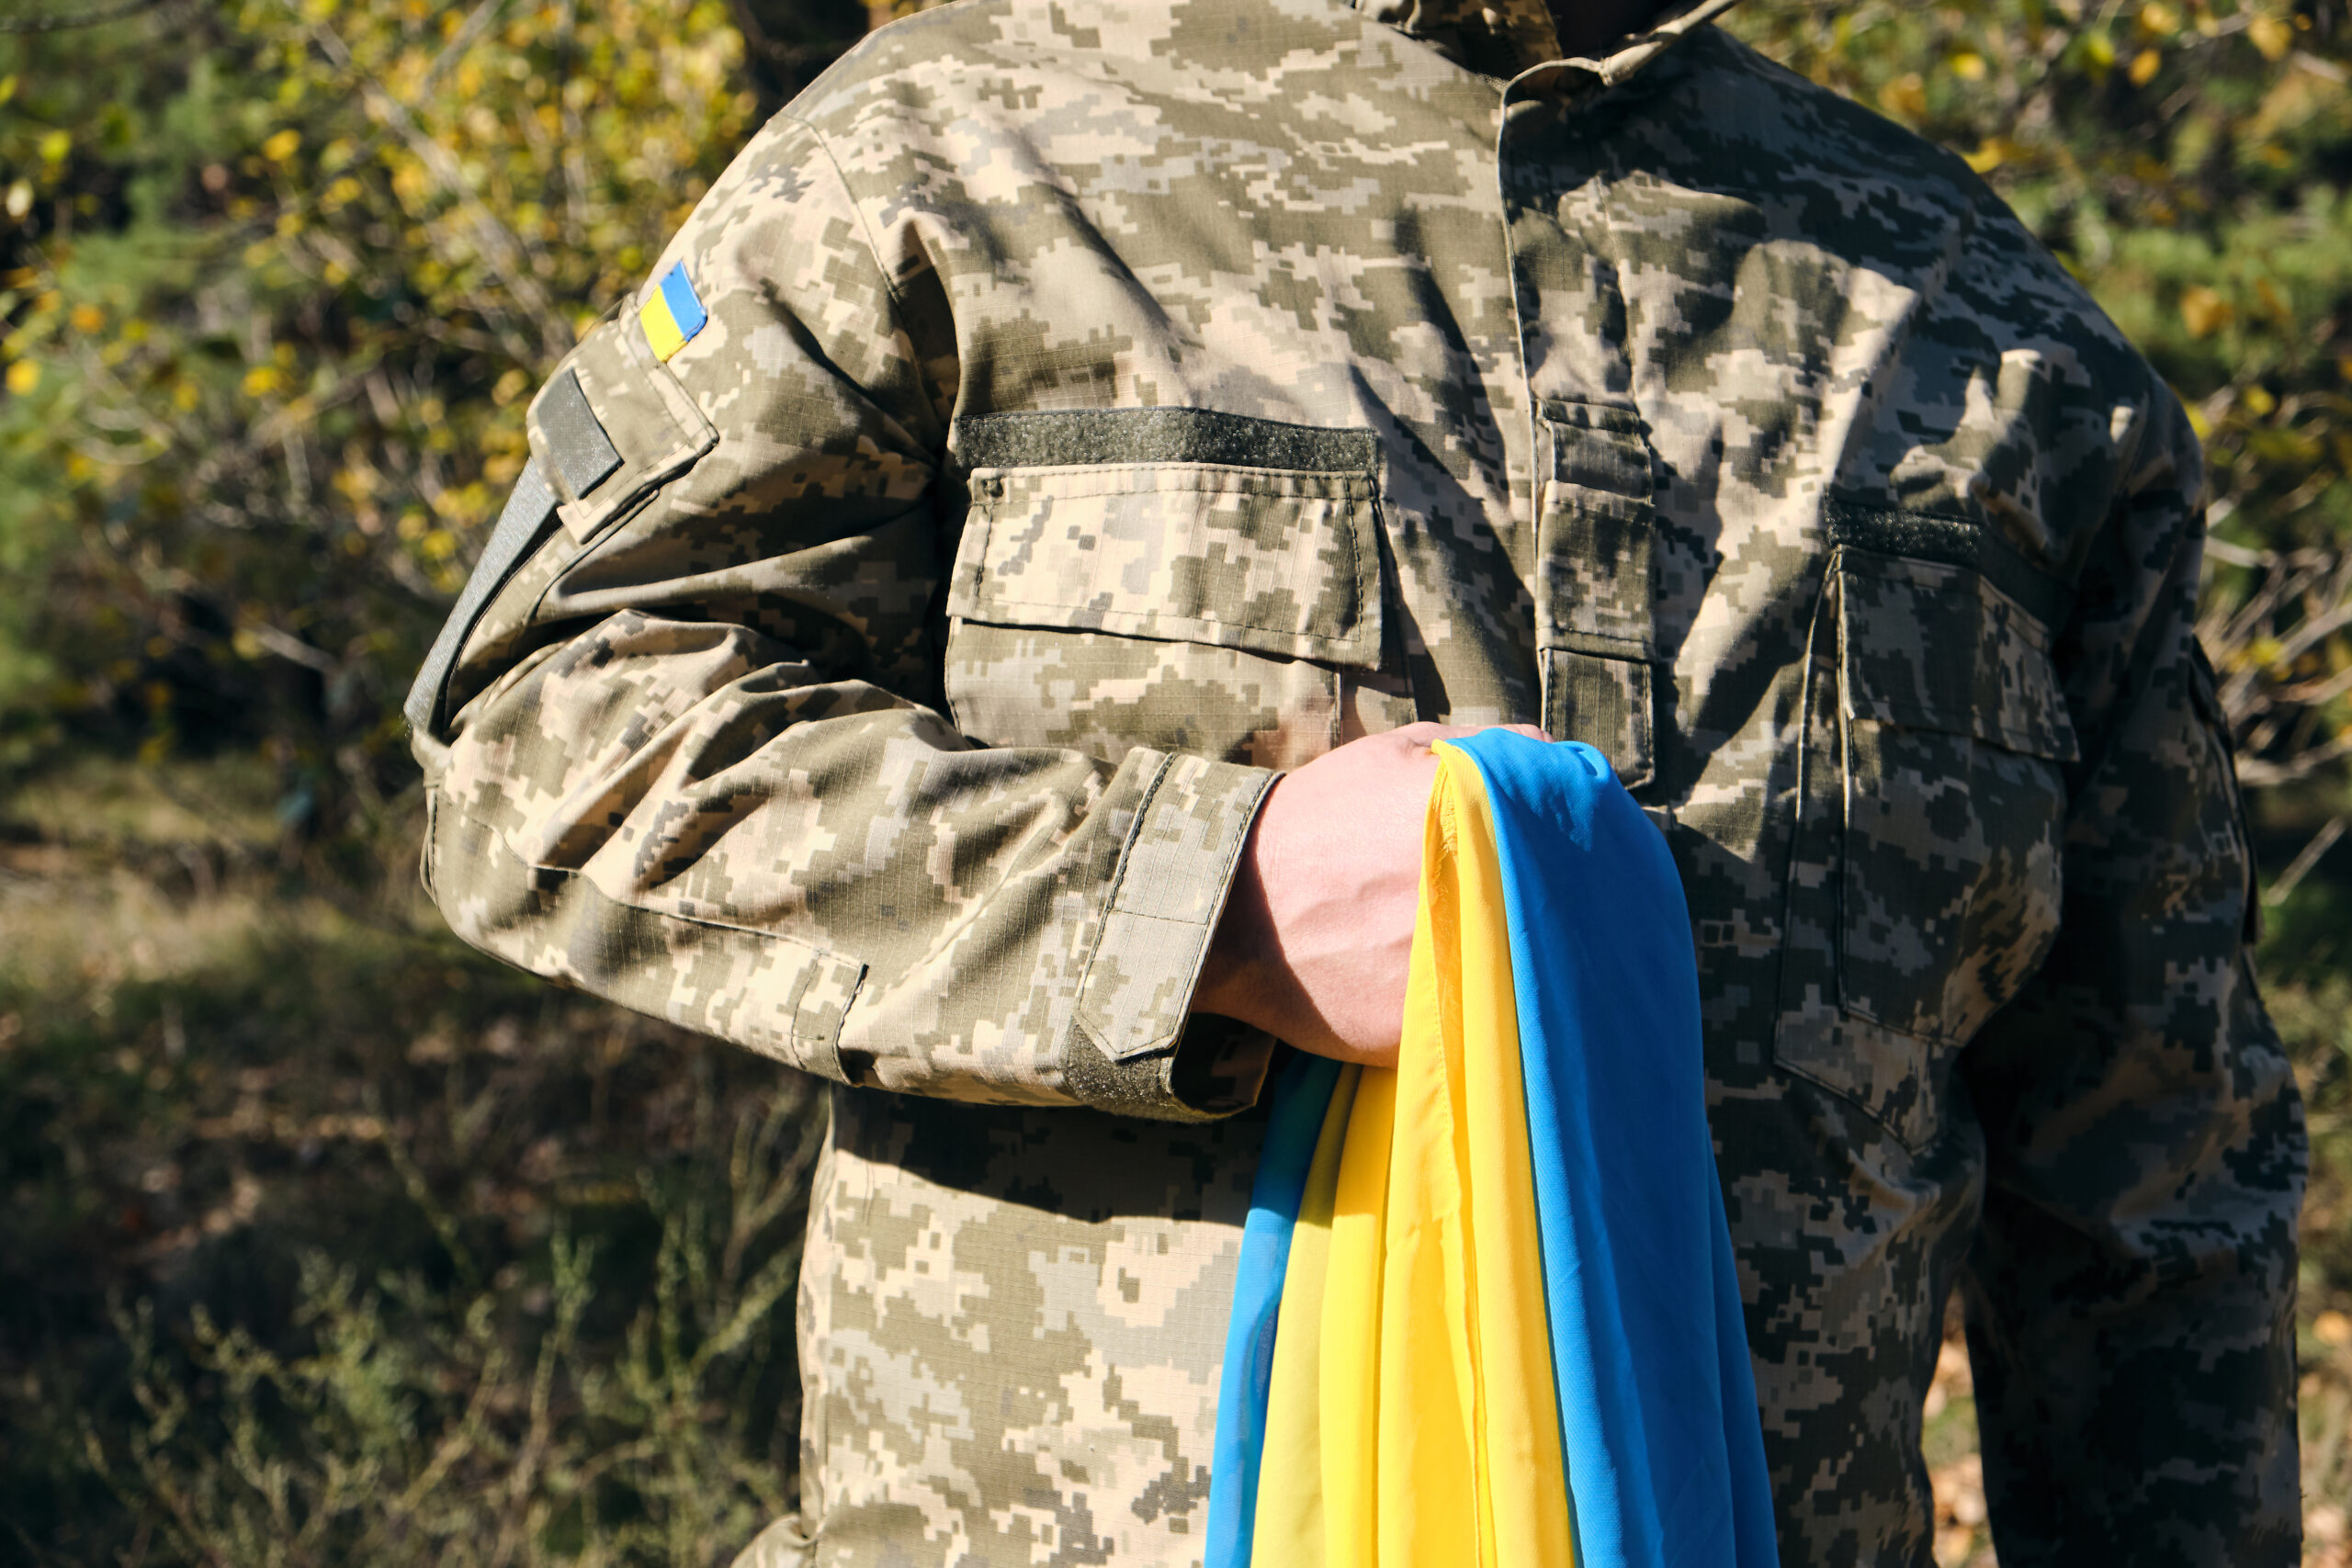 Mundur wojskowy ozdobiony ukraińskimi flagami, które dumnie prezentują narodowe barwy